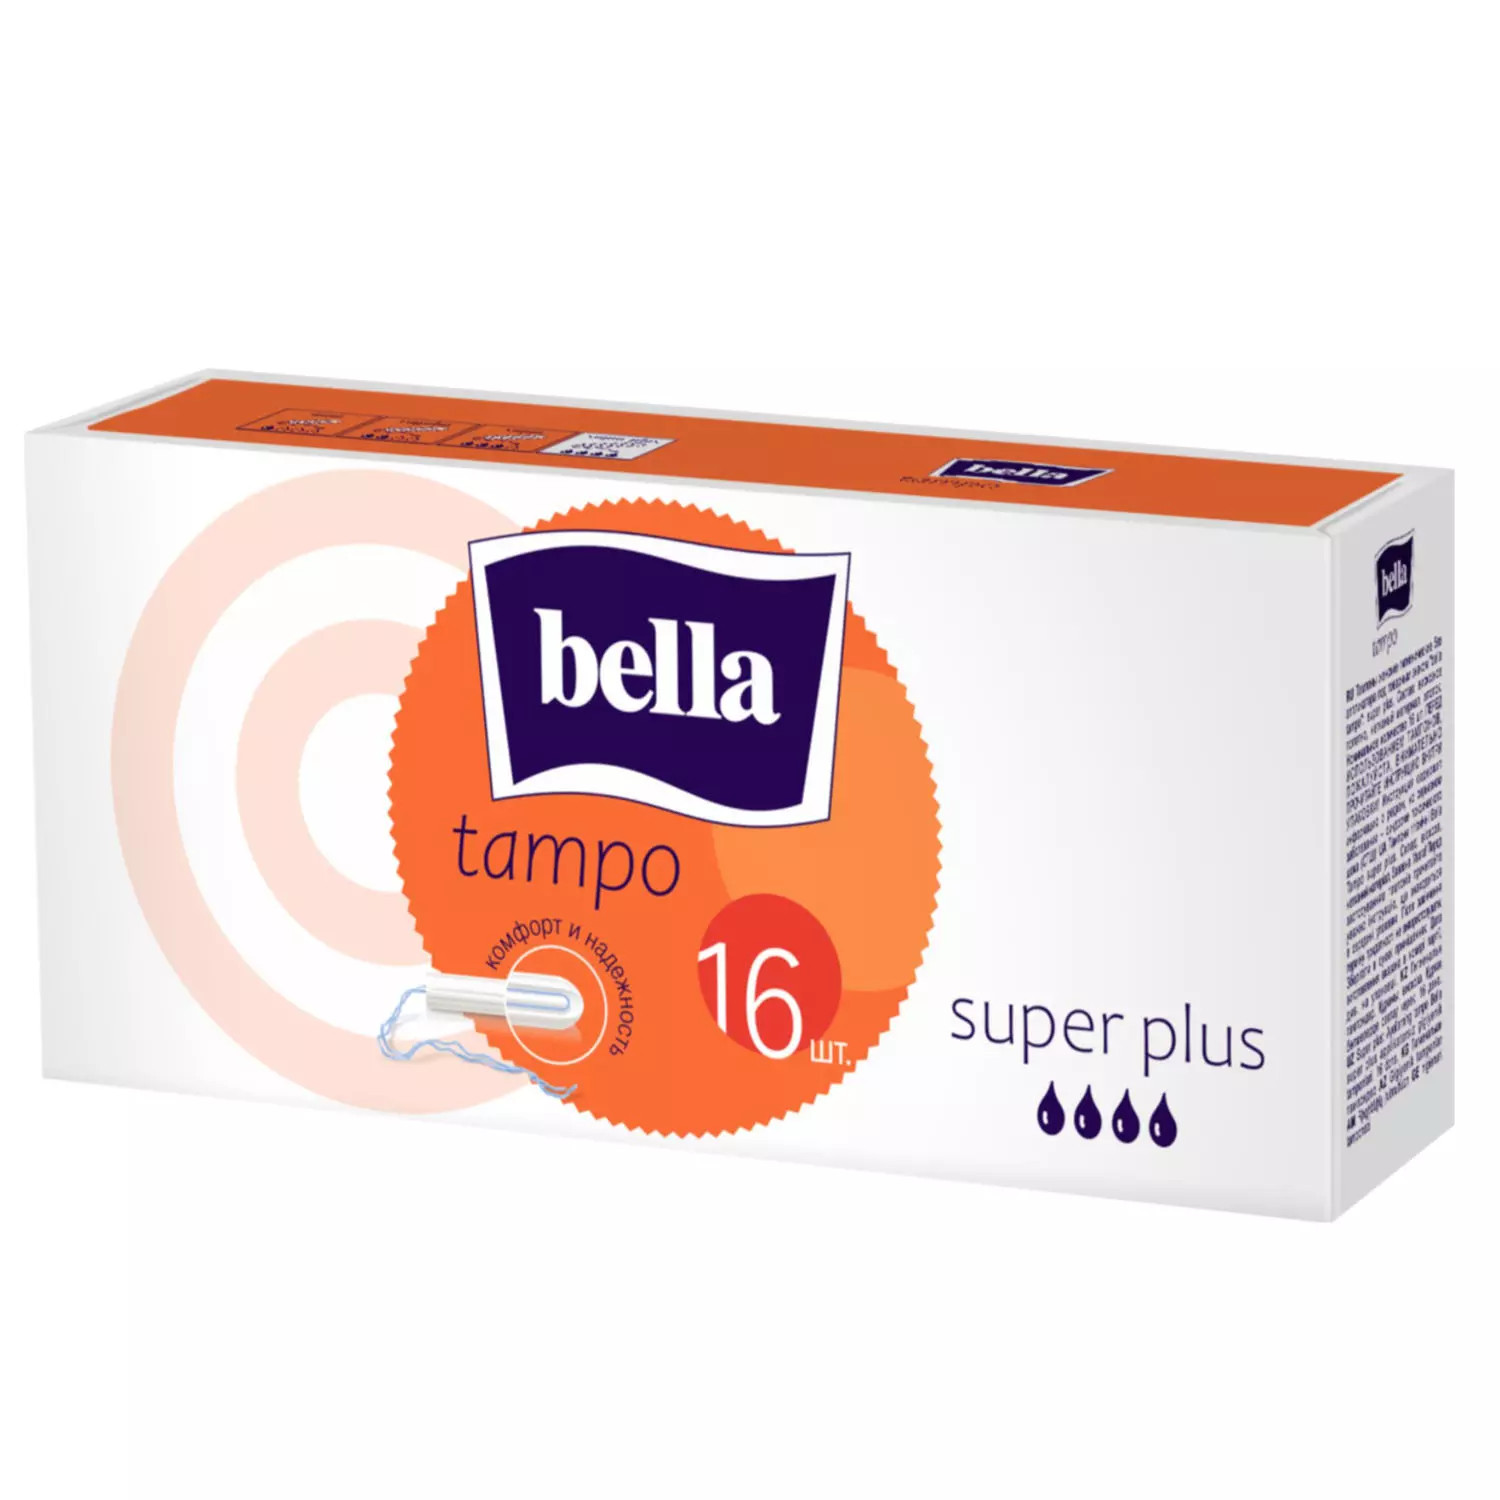 Тампоны Bella, premium comfort Super Plus без аппликатора, 16 шт bella тампоны без аппликатора premium comfort super plus 16 шт